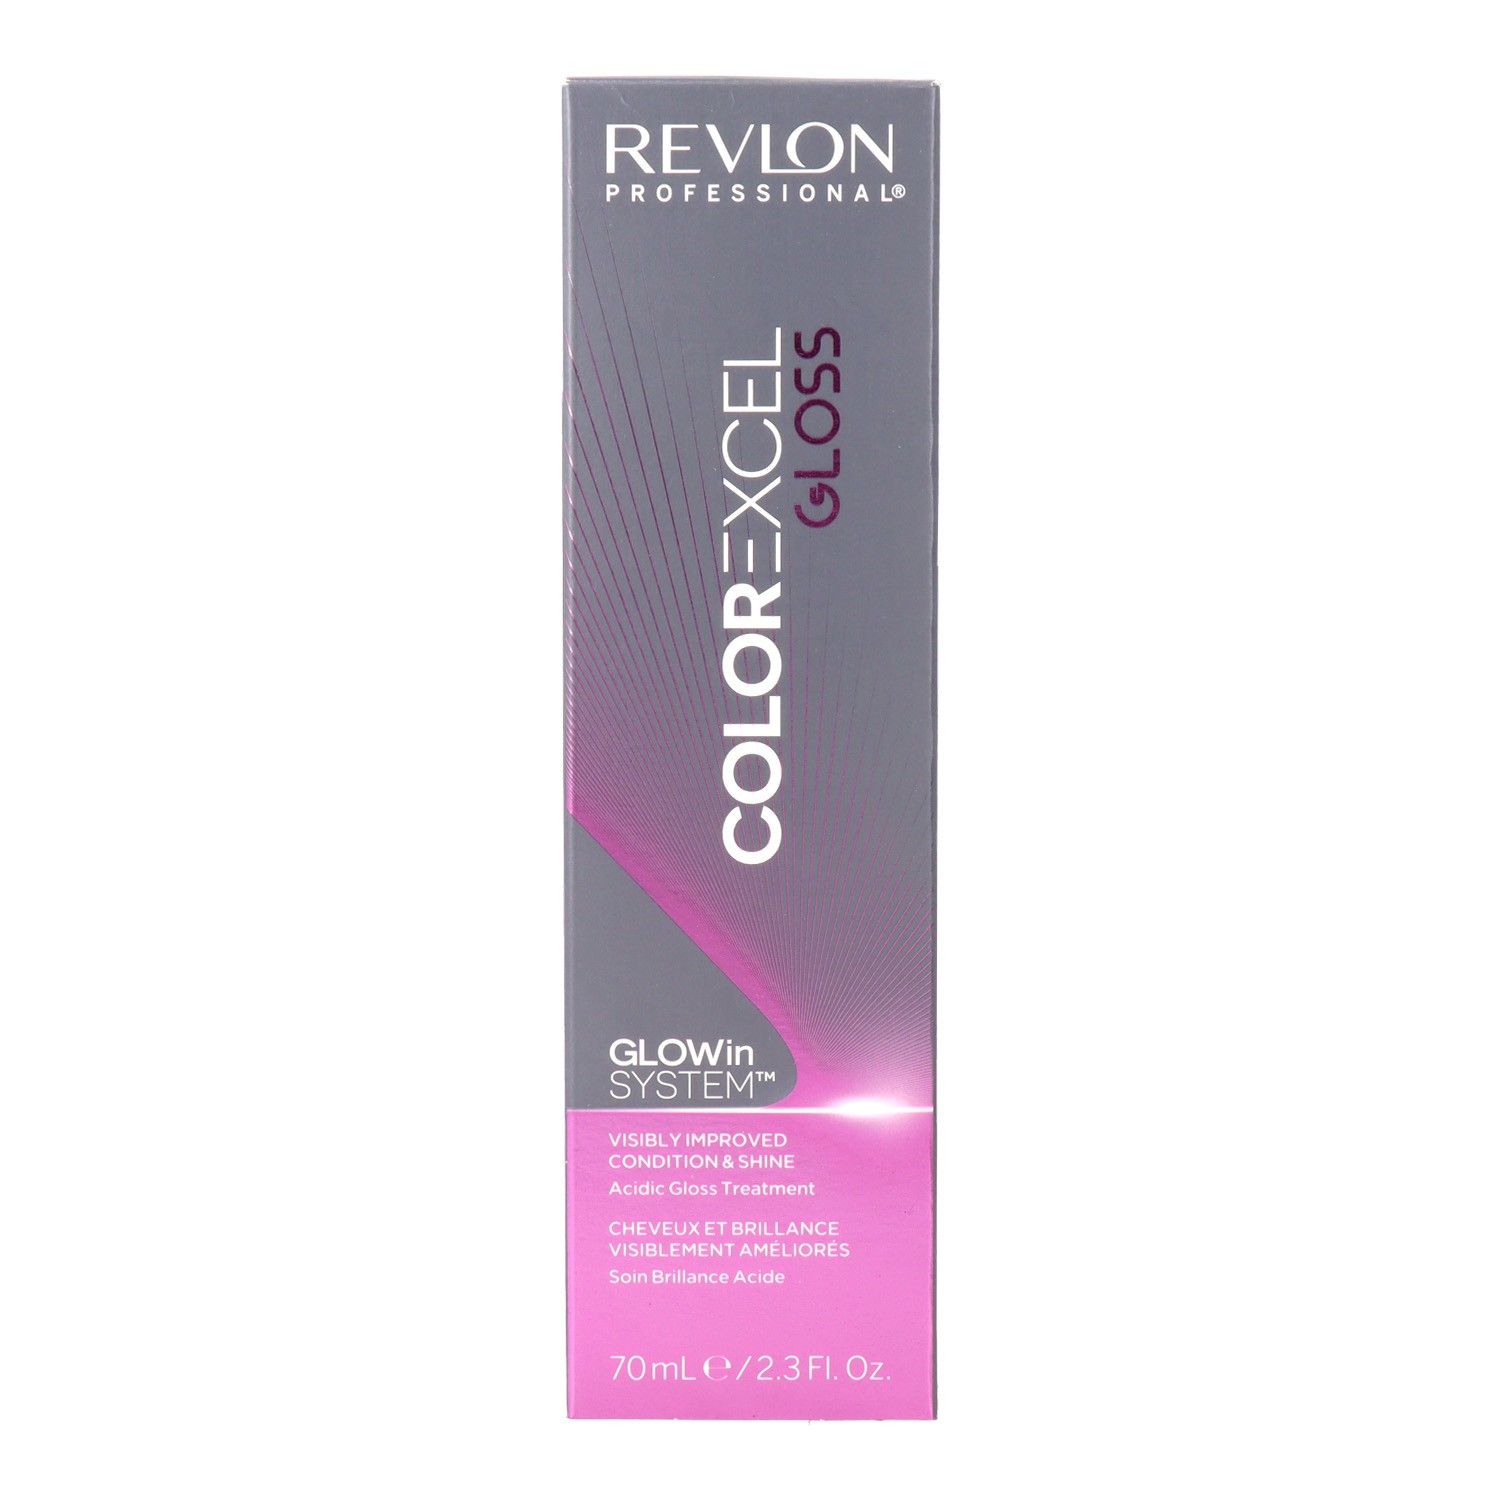 Revlon - Revlon revlonissimo color 9.22 excel gloss 70 ml, coloración tono sobre tono. Belleza y cuidado de tu cabello y tu piel con Revlon.